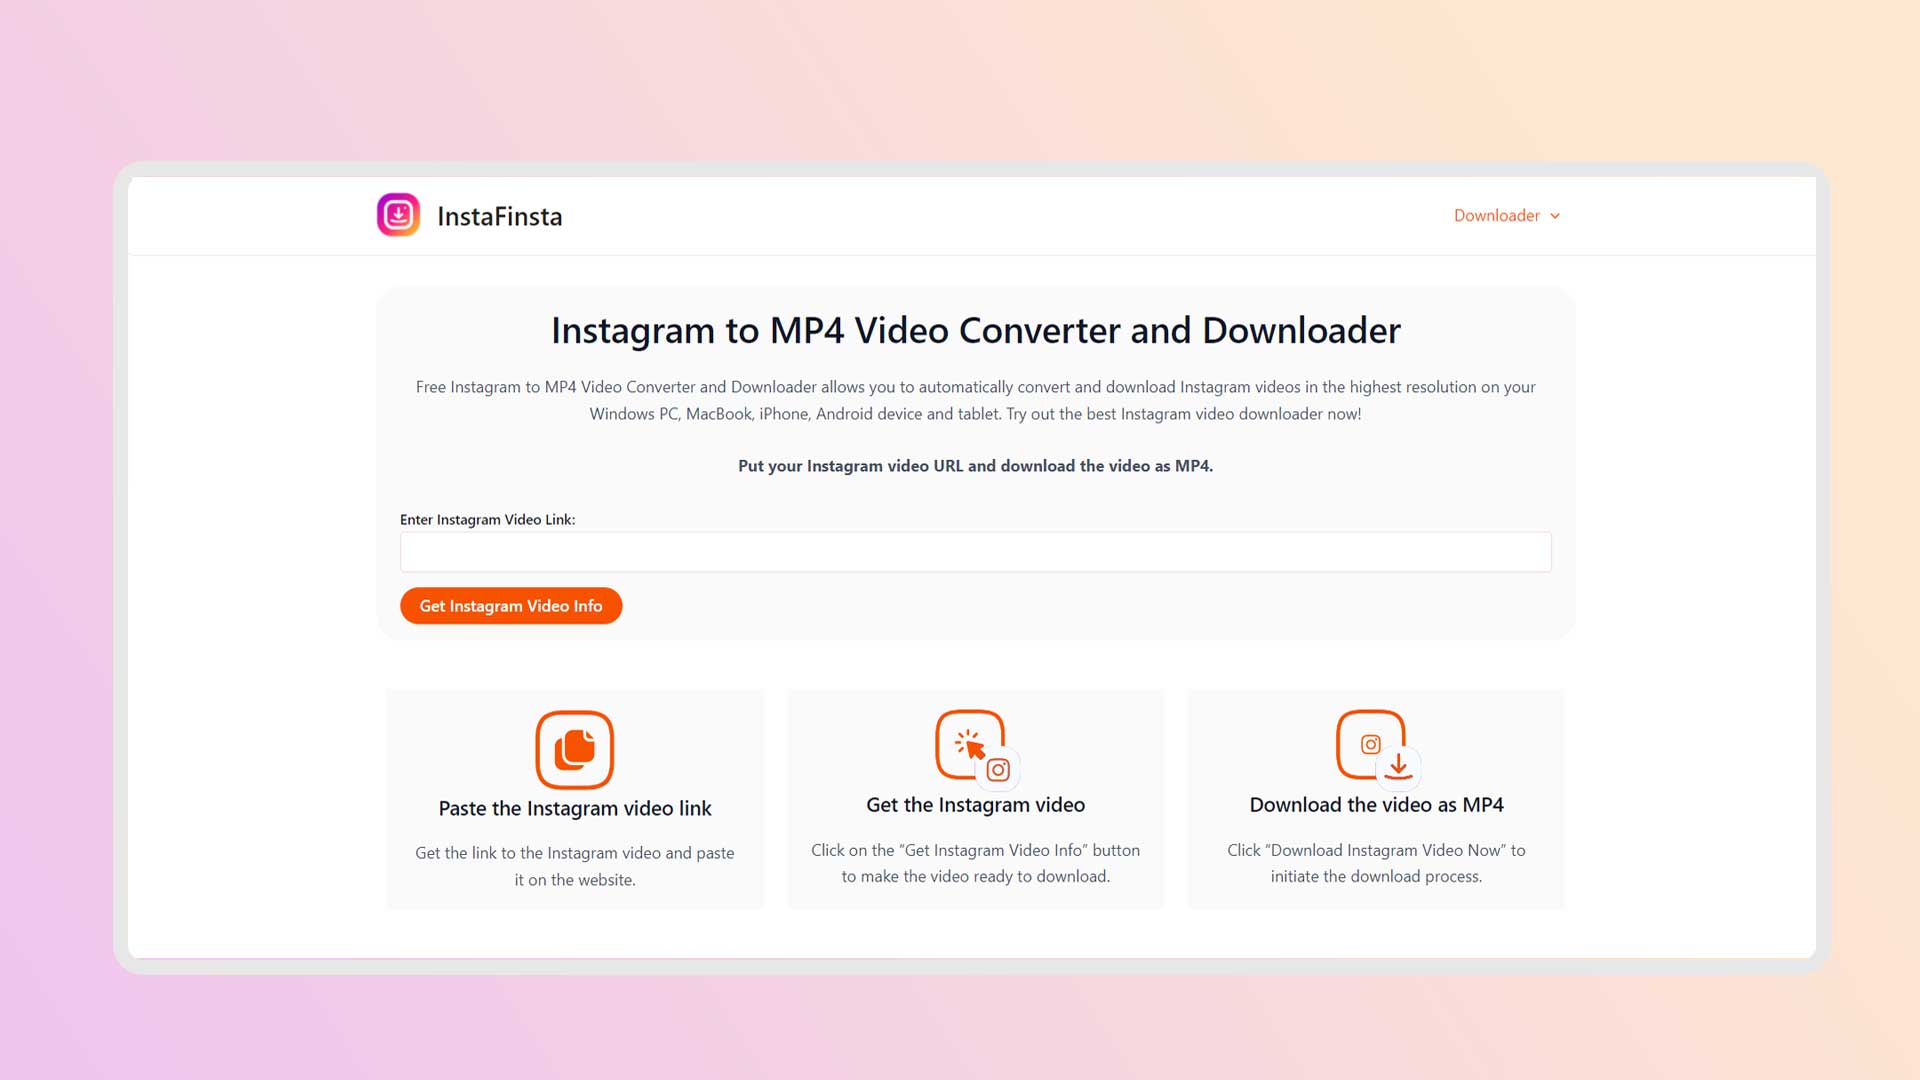 InstaFinsta App InstaFinsta - Instagram Video Downloader